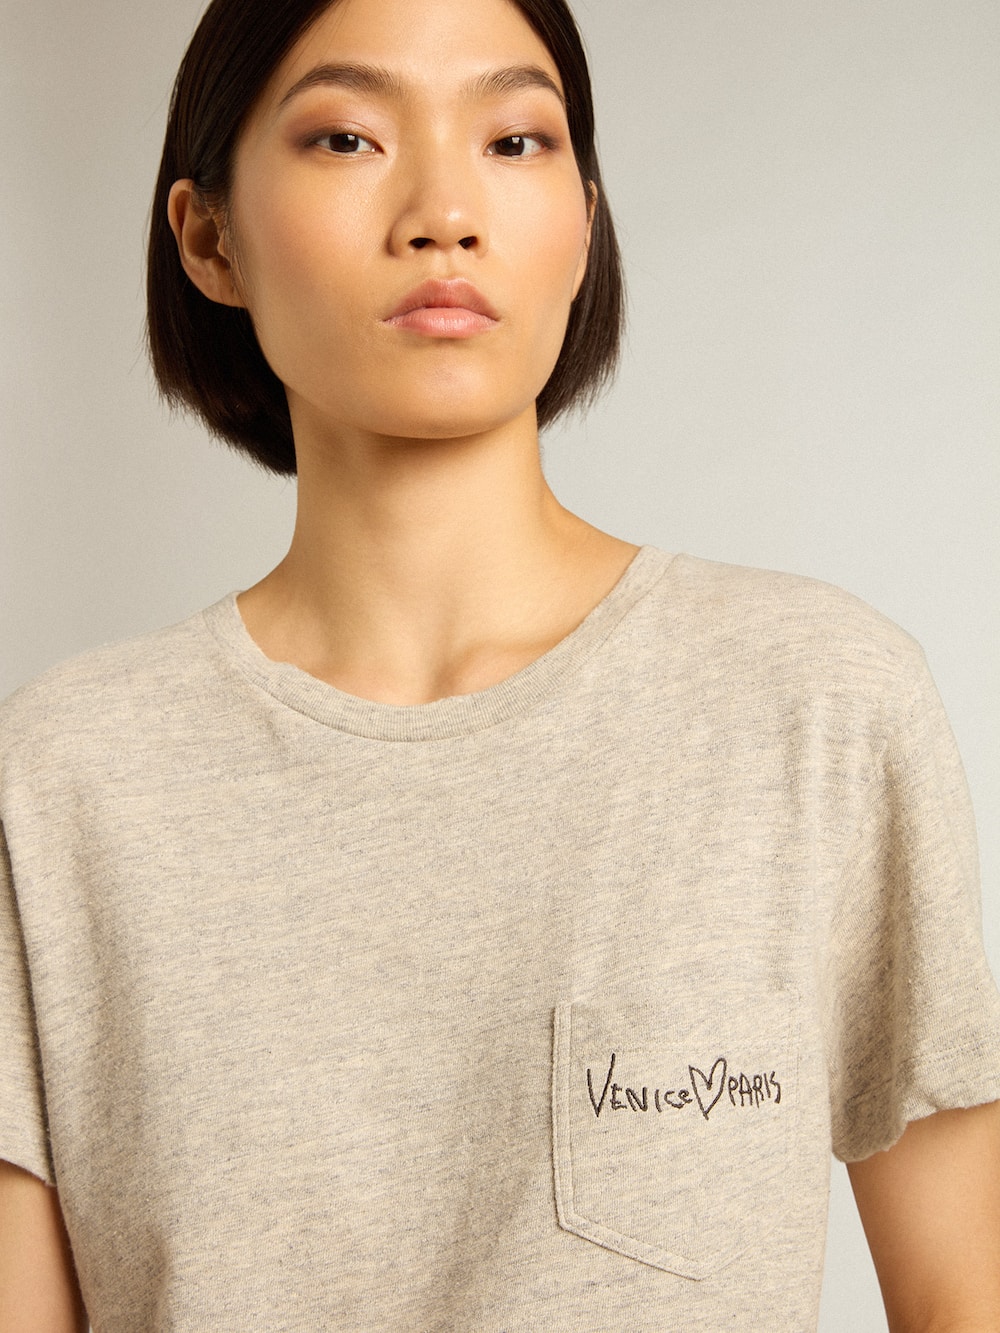 Golden Goose - Camiseta de mujer en algodón color gris jaspeado con mensaje bordado in 